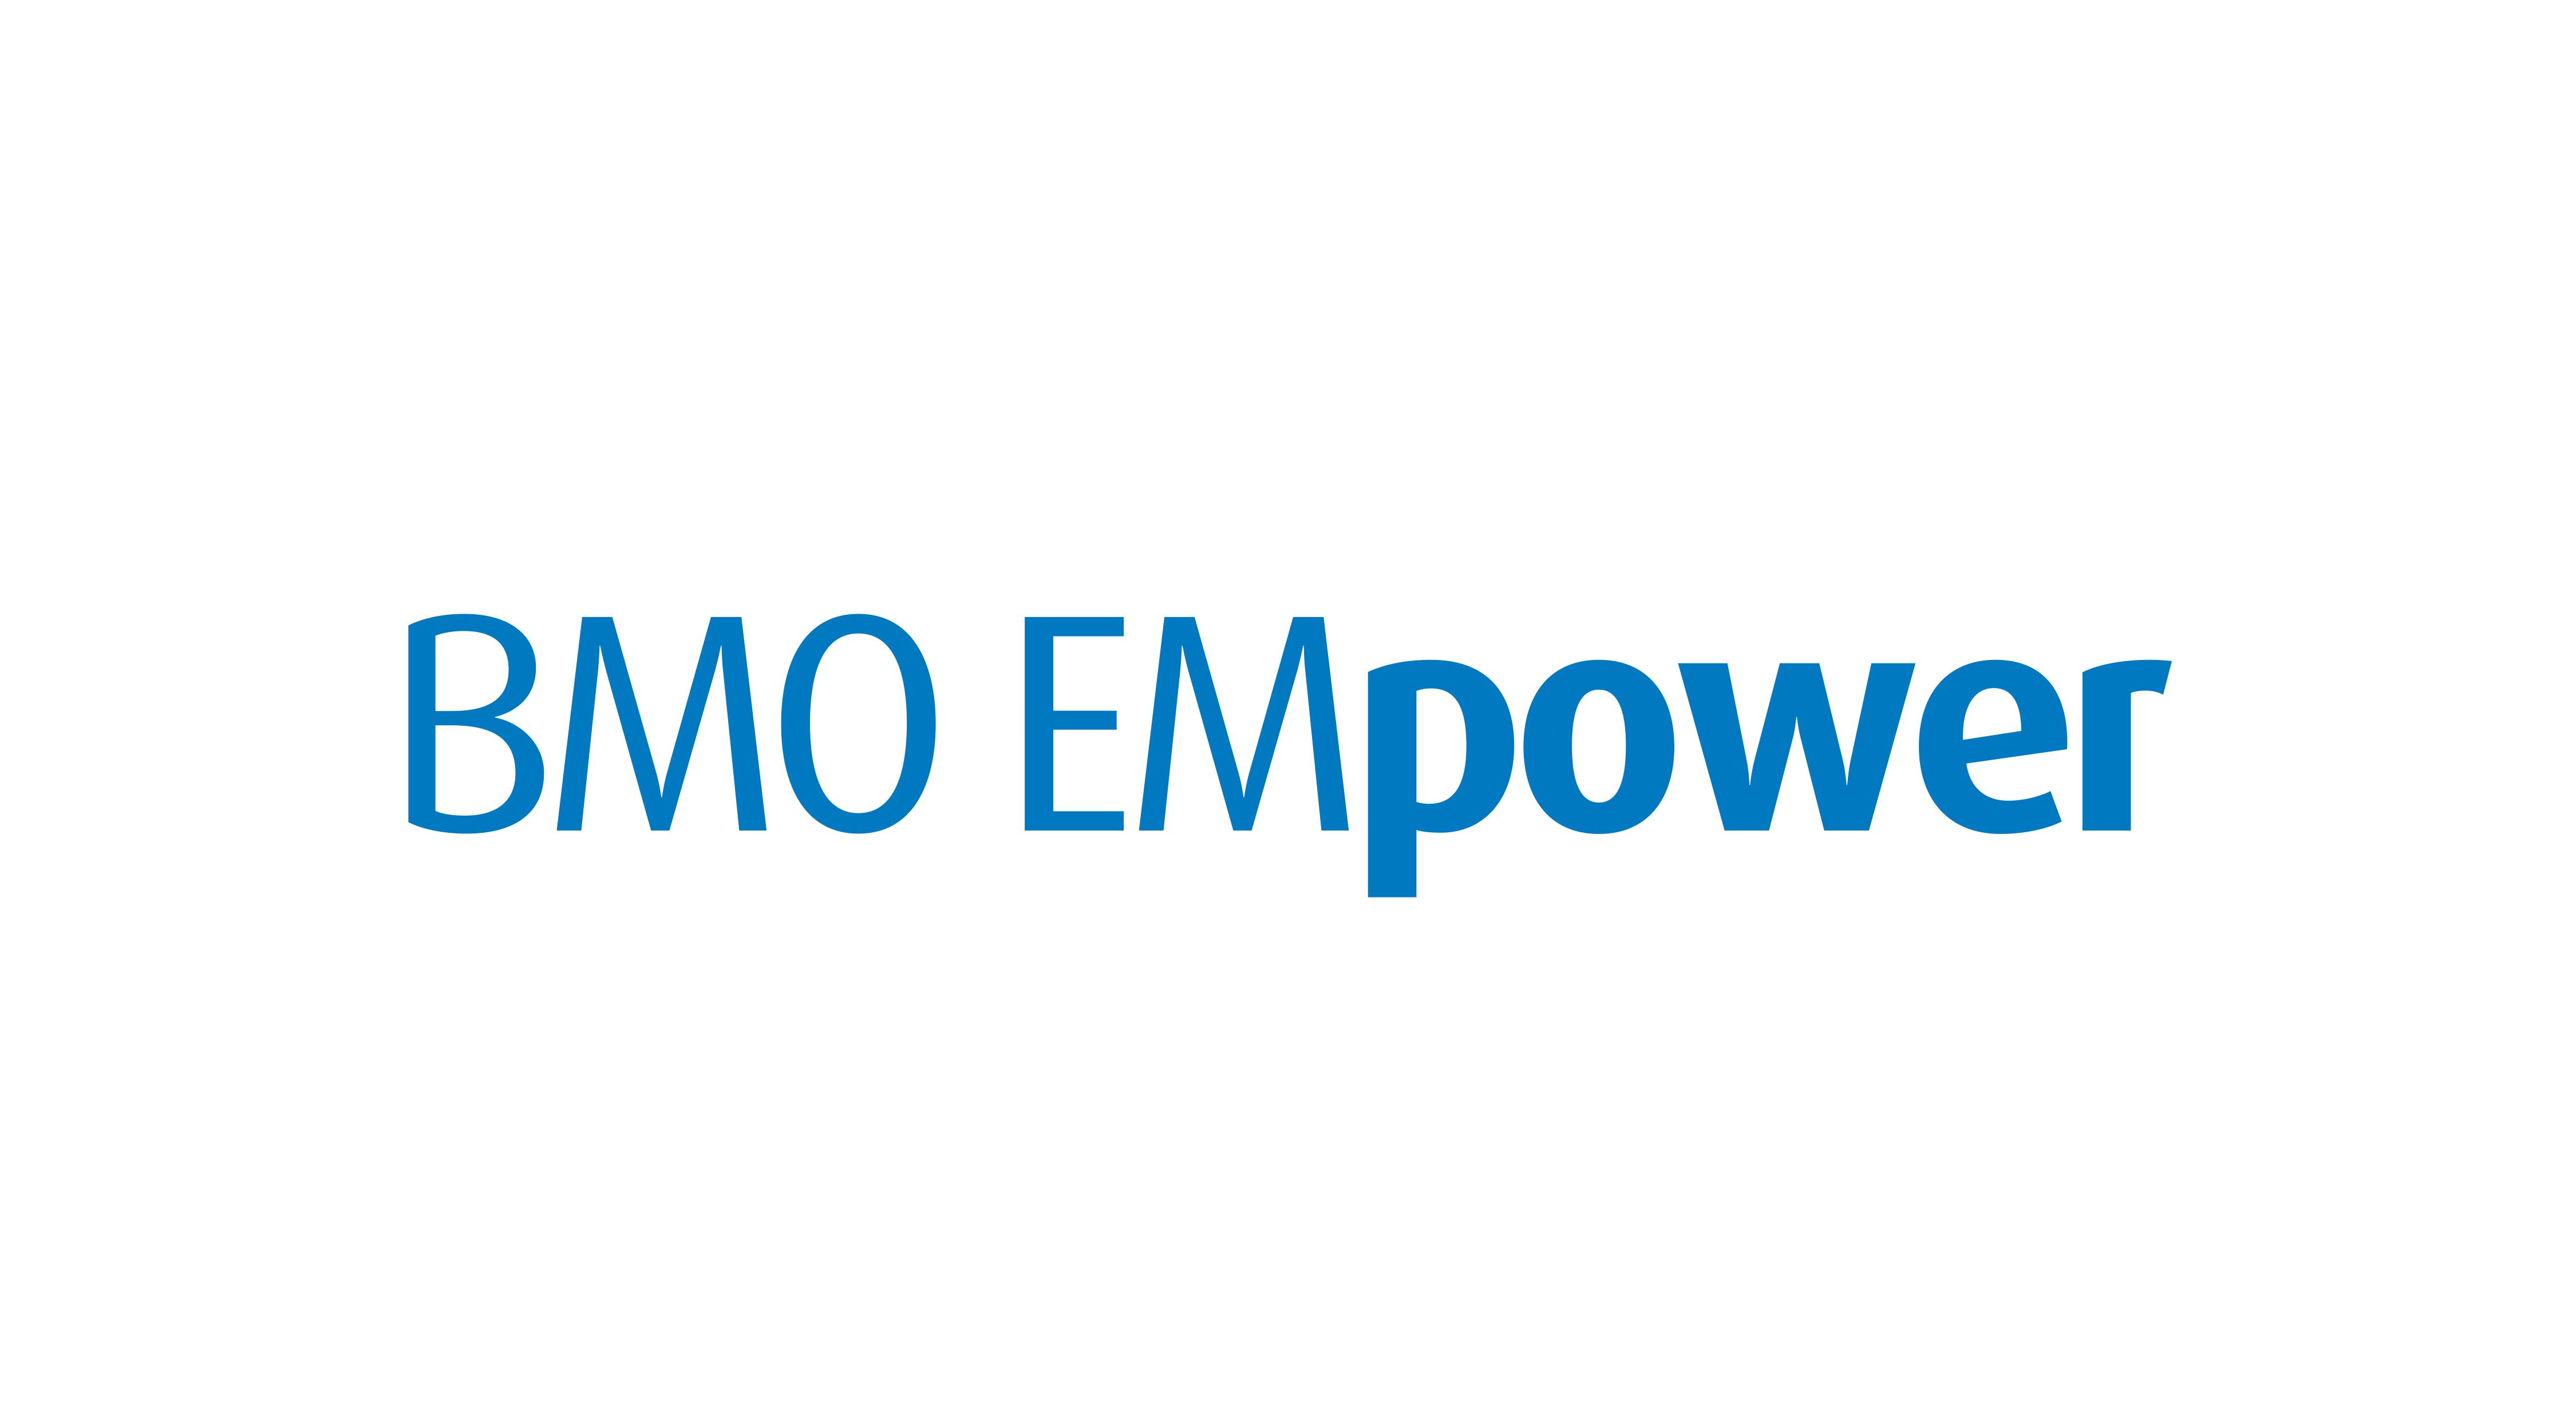 BMO EMpower